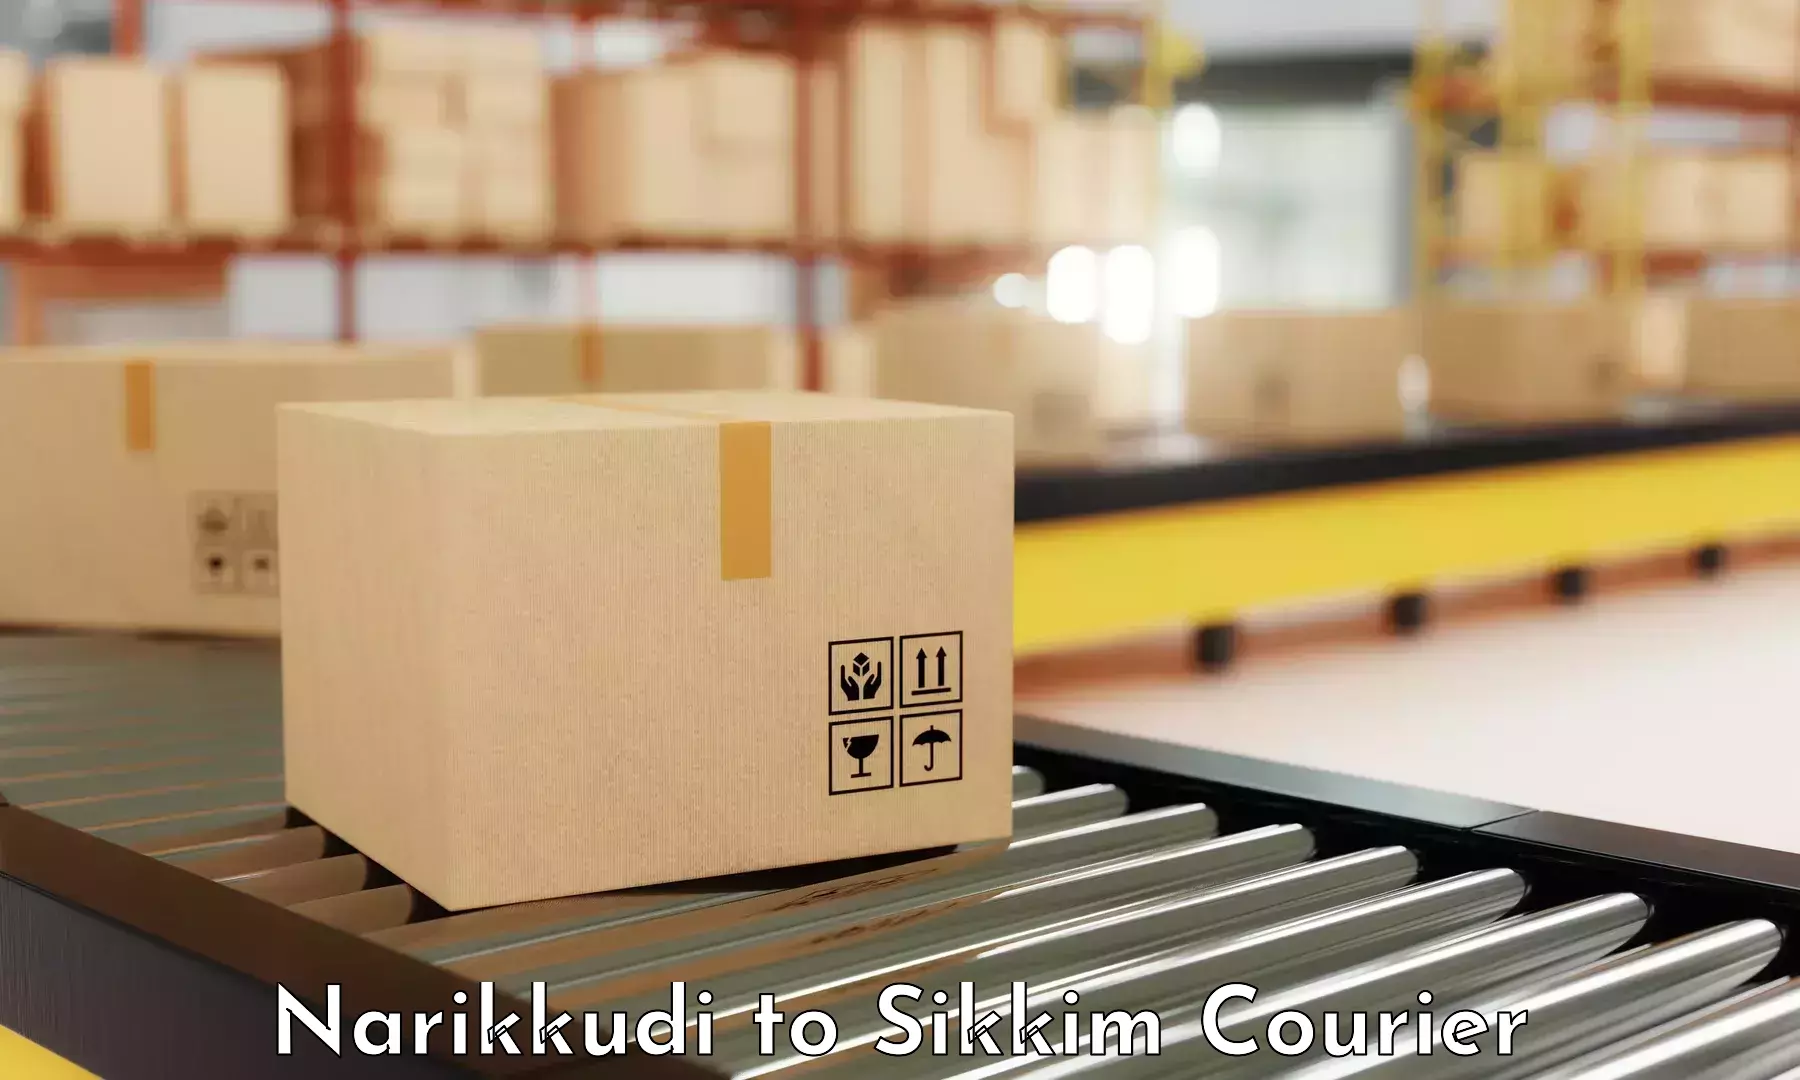 Flexible parcel services Narikkudi to Geyzing